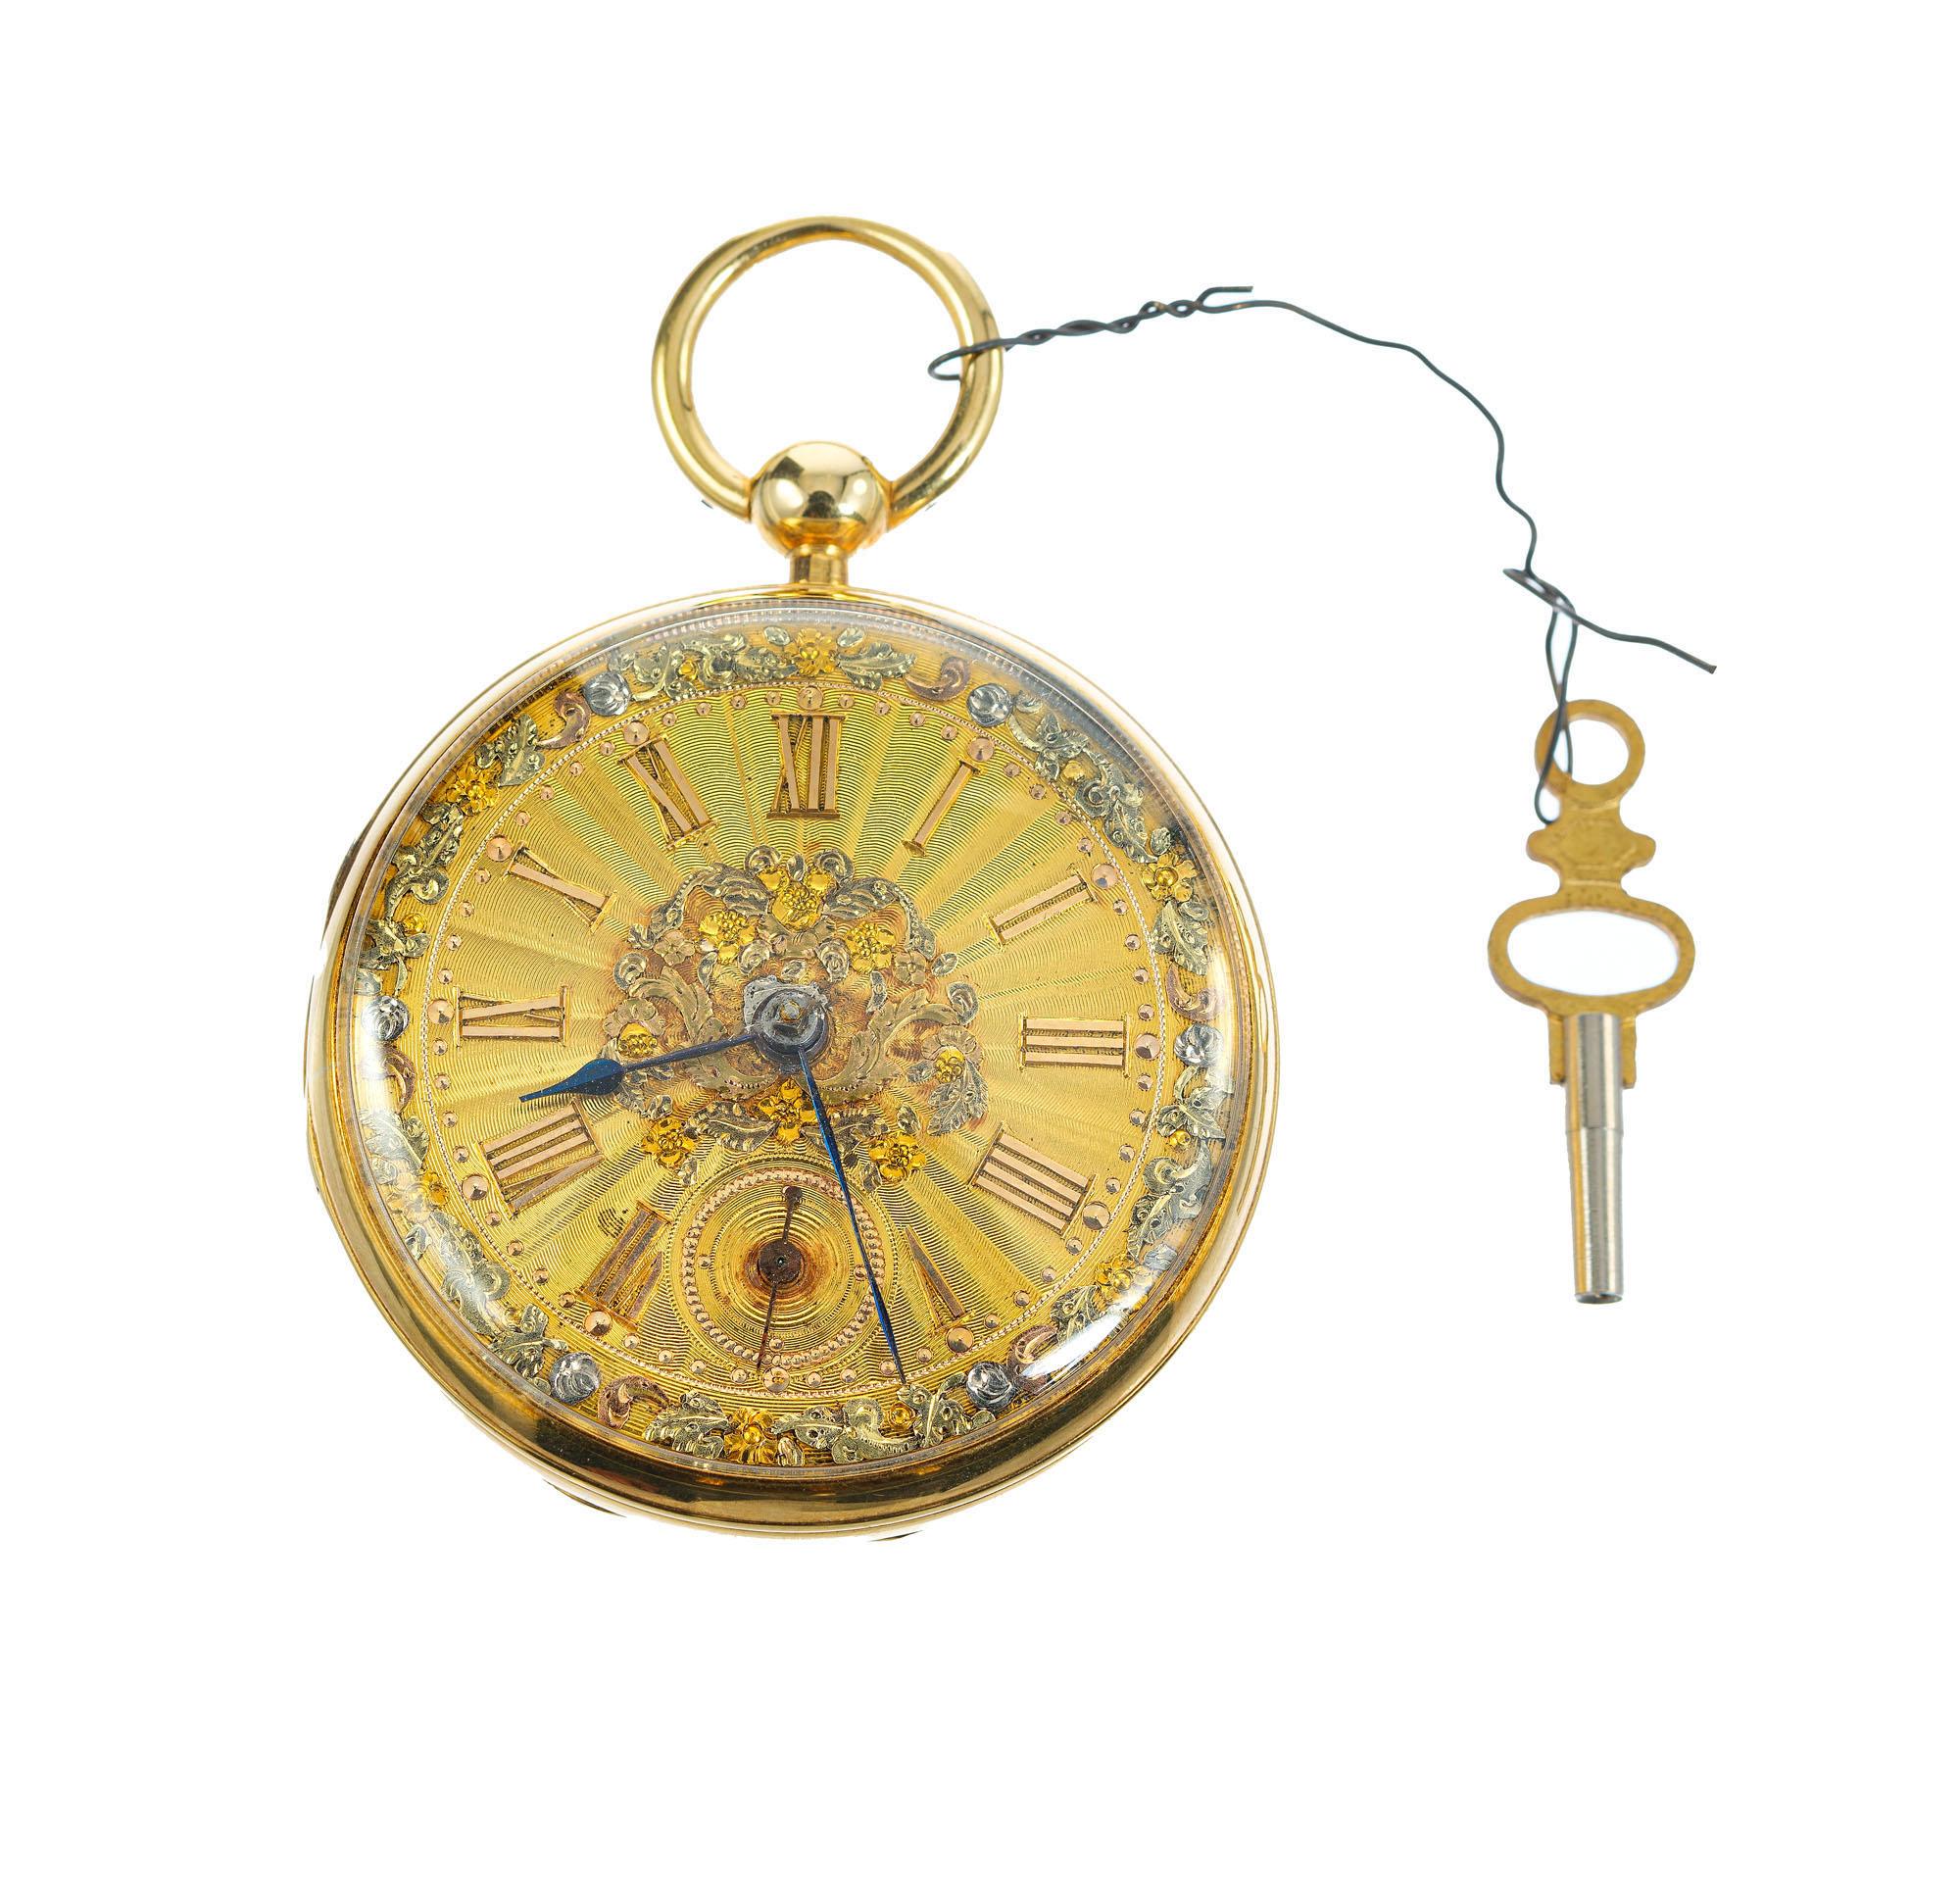 Offene John Moncas Liverpool 18k Gold Taschenuhr. circa 1810-1840 mit massivem Gold tri Farbe sehr detaillierte Zifferblatt. Läuft gut und hält die Zeit gut ein. Uhrwerk mit Schnecke und Kettenantrieb, Schlüsselaufzug, Schlüsselsatz. 

18k Gelb-,